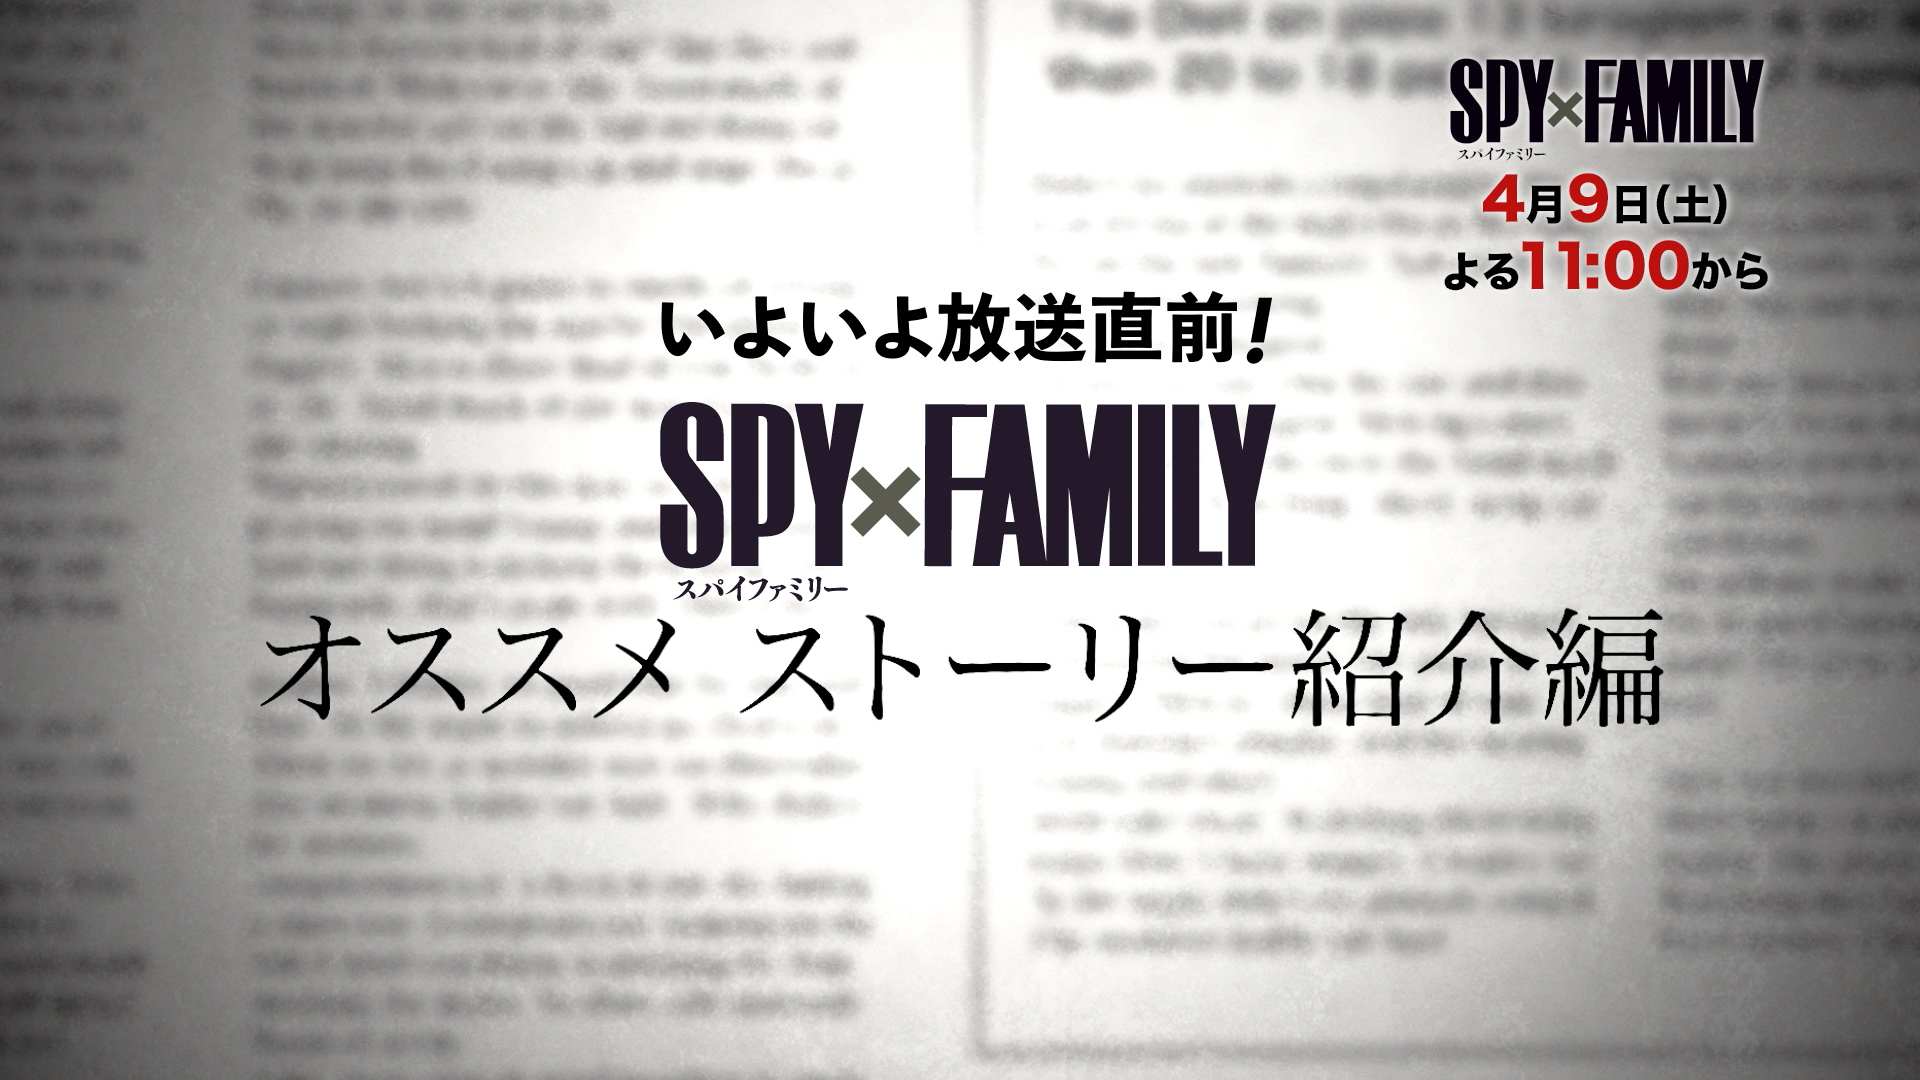 TVアニメ『SPY×FAMILY』放送直前ミニ番組制作